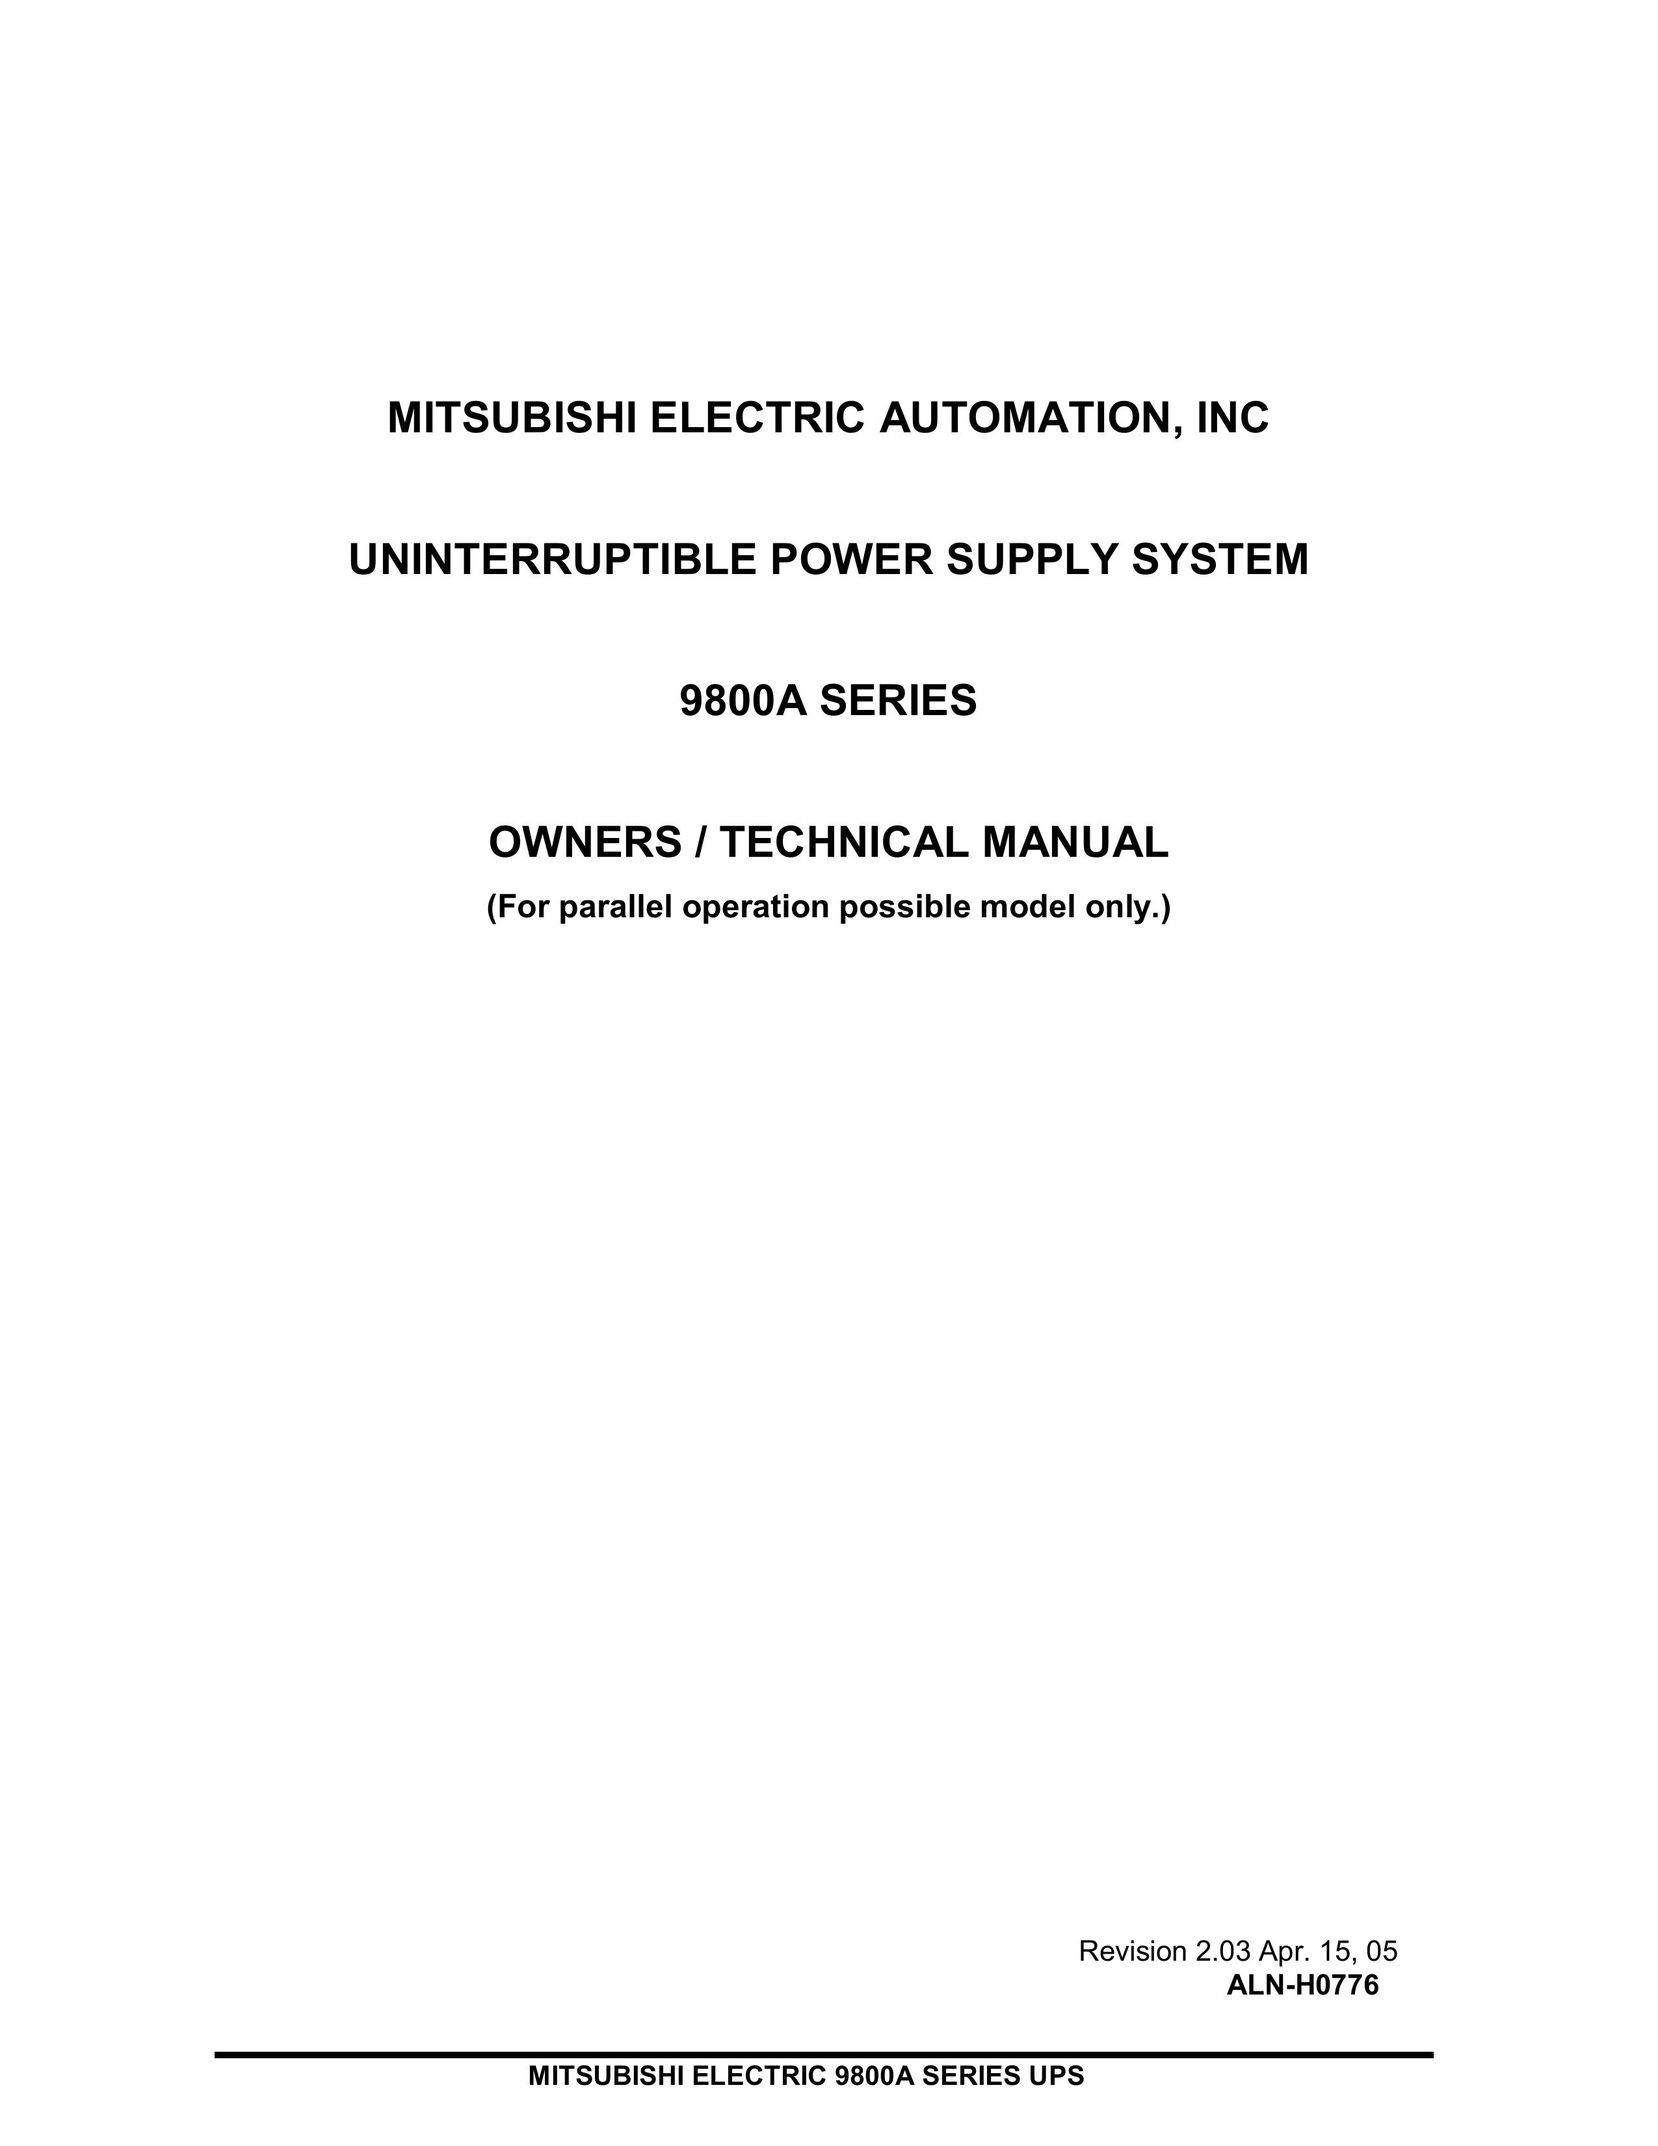 Mitsubishi 9800A Series Power Supply User Manual